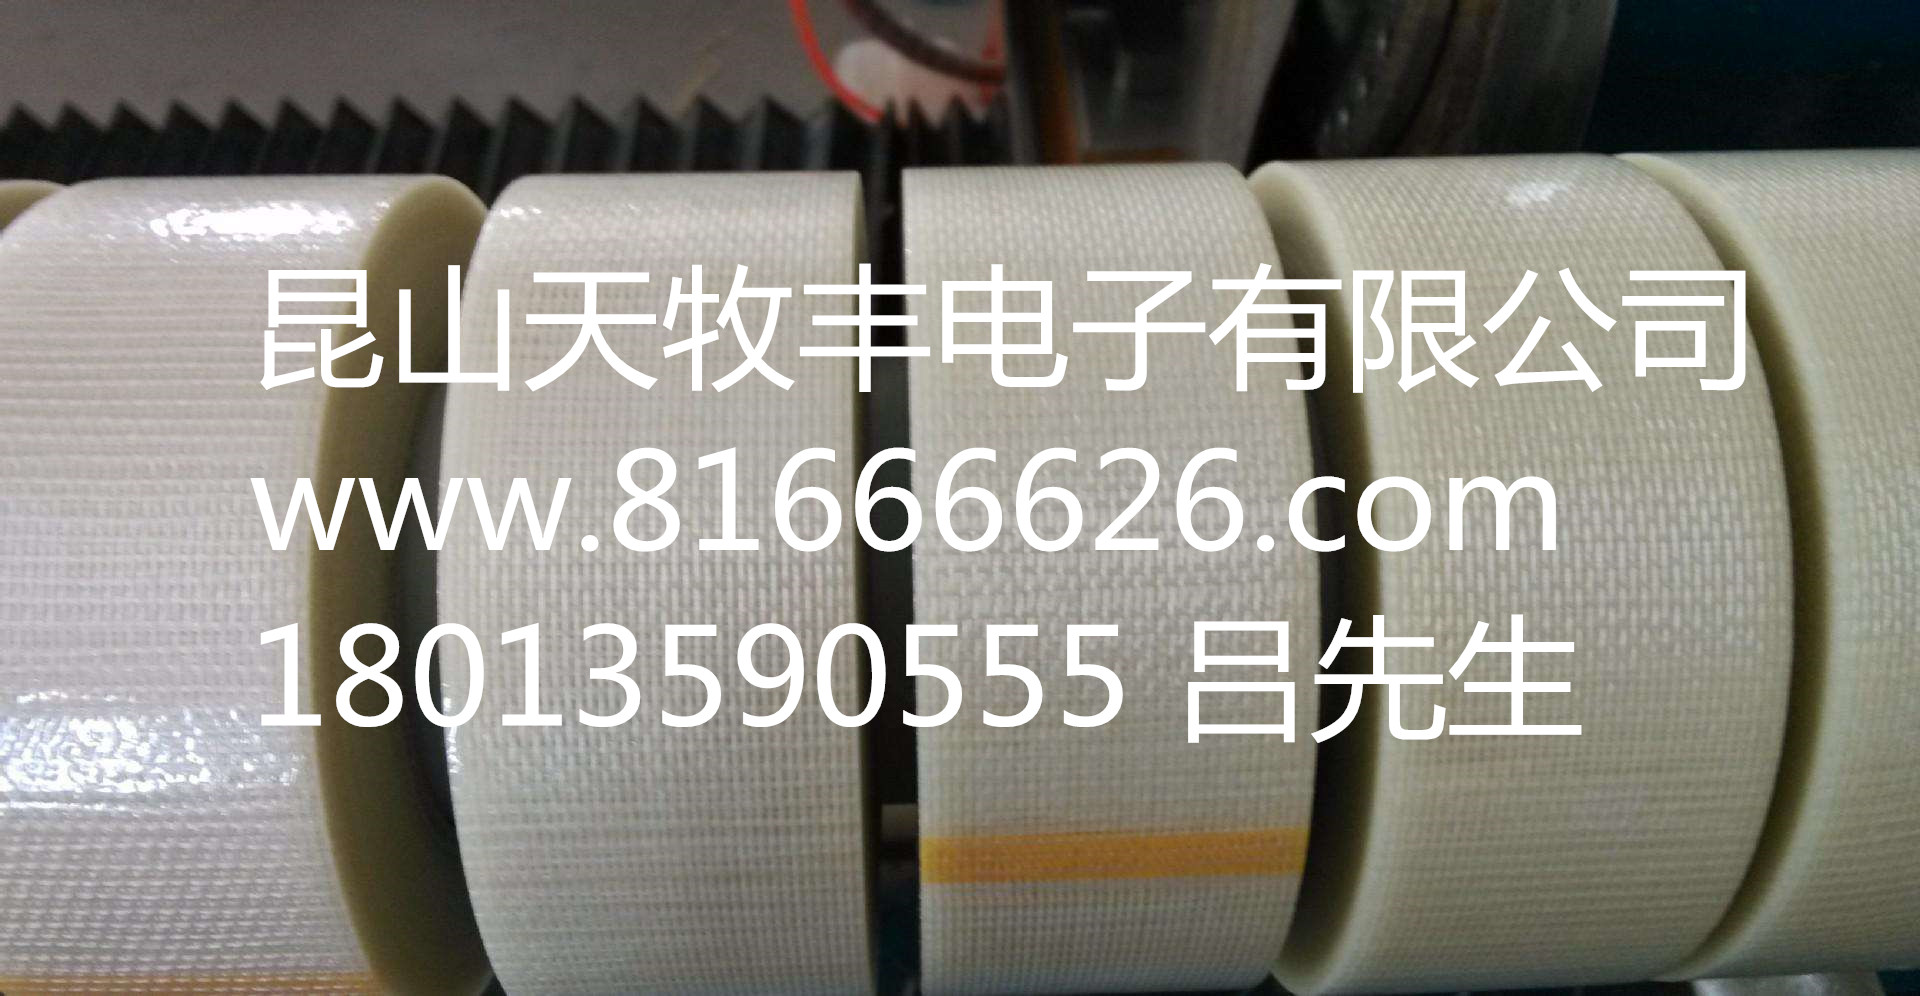 纤维胶带 供应纤维胶带 特价供应纤维胶带 天牧丰特价供应纤维胶带